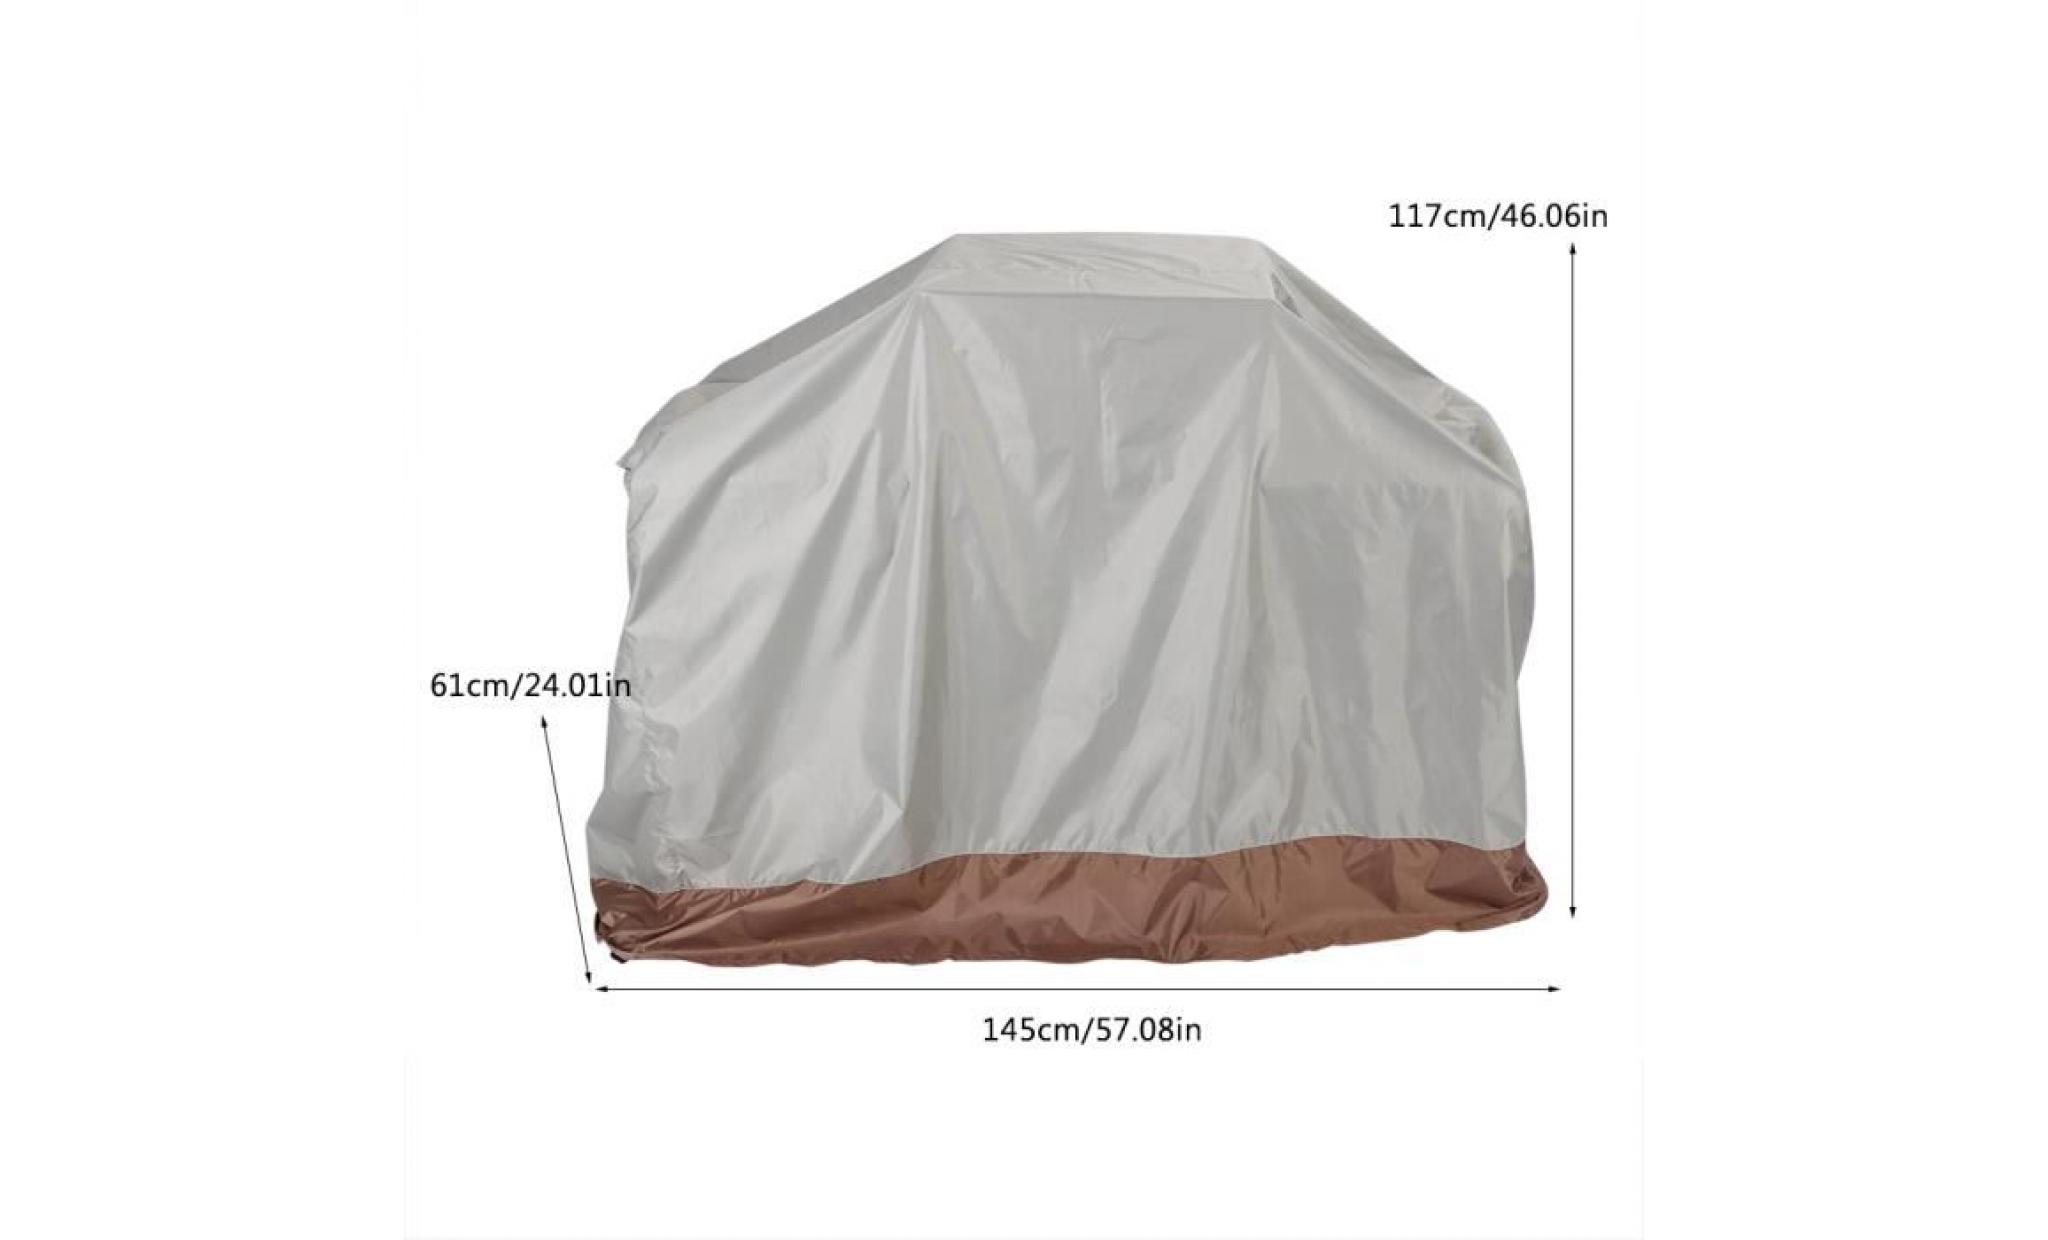 housse bache de protection bbq couverture de gril imperméable extérieur tissu de 210d oxford 145 * 61 * 117cm pas cher